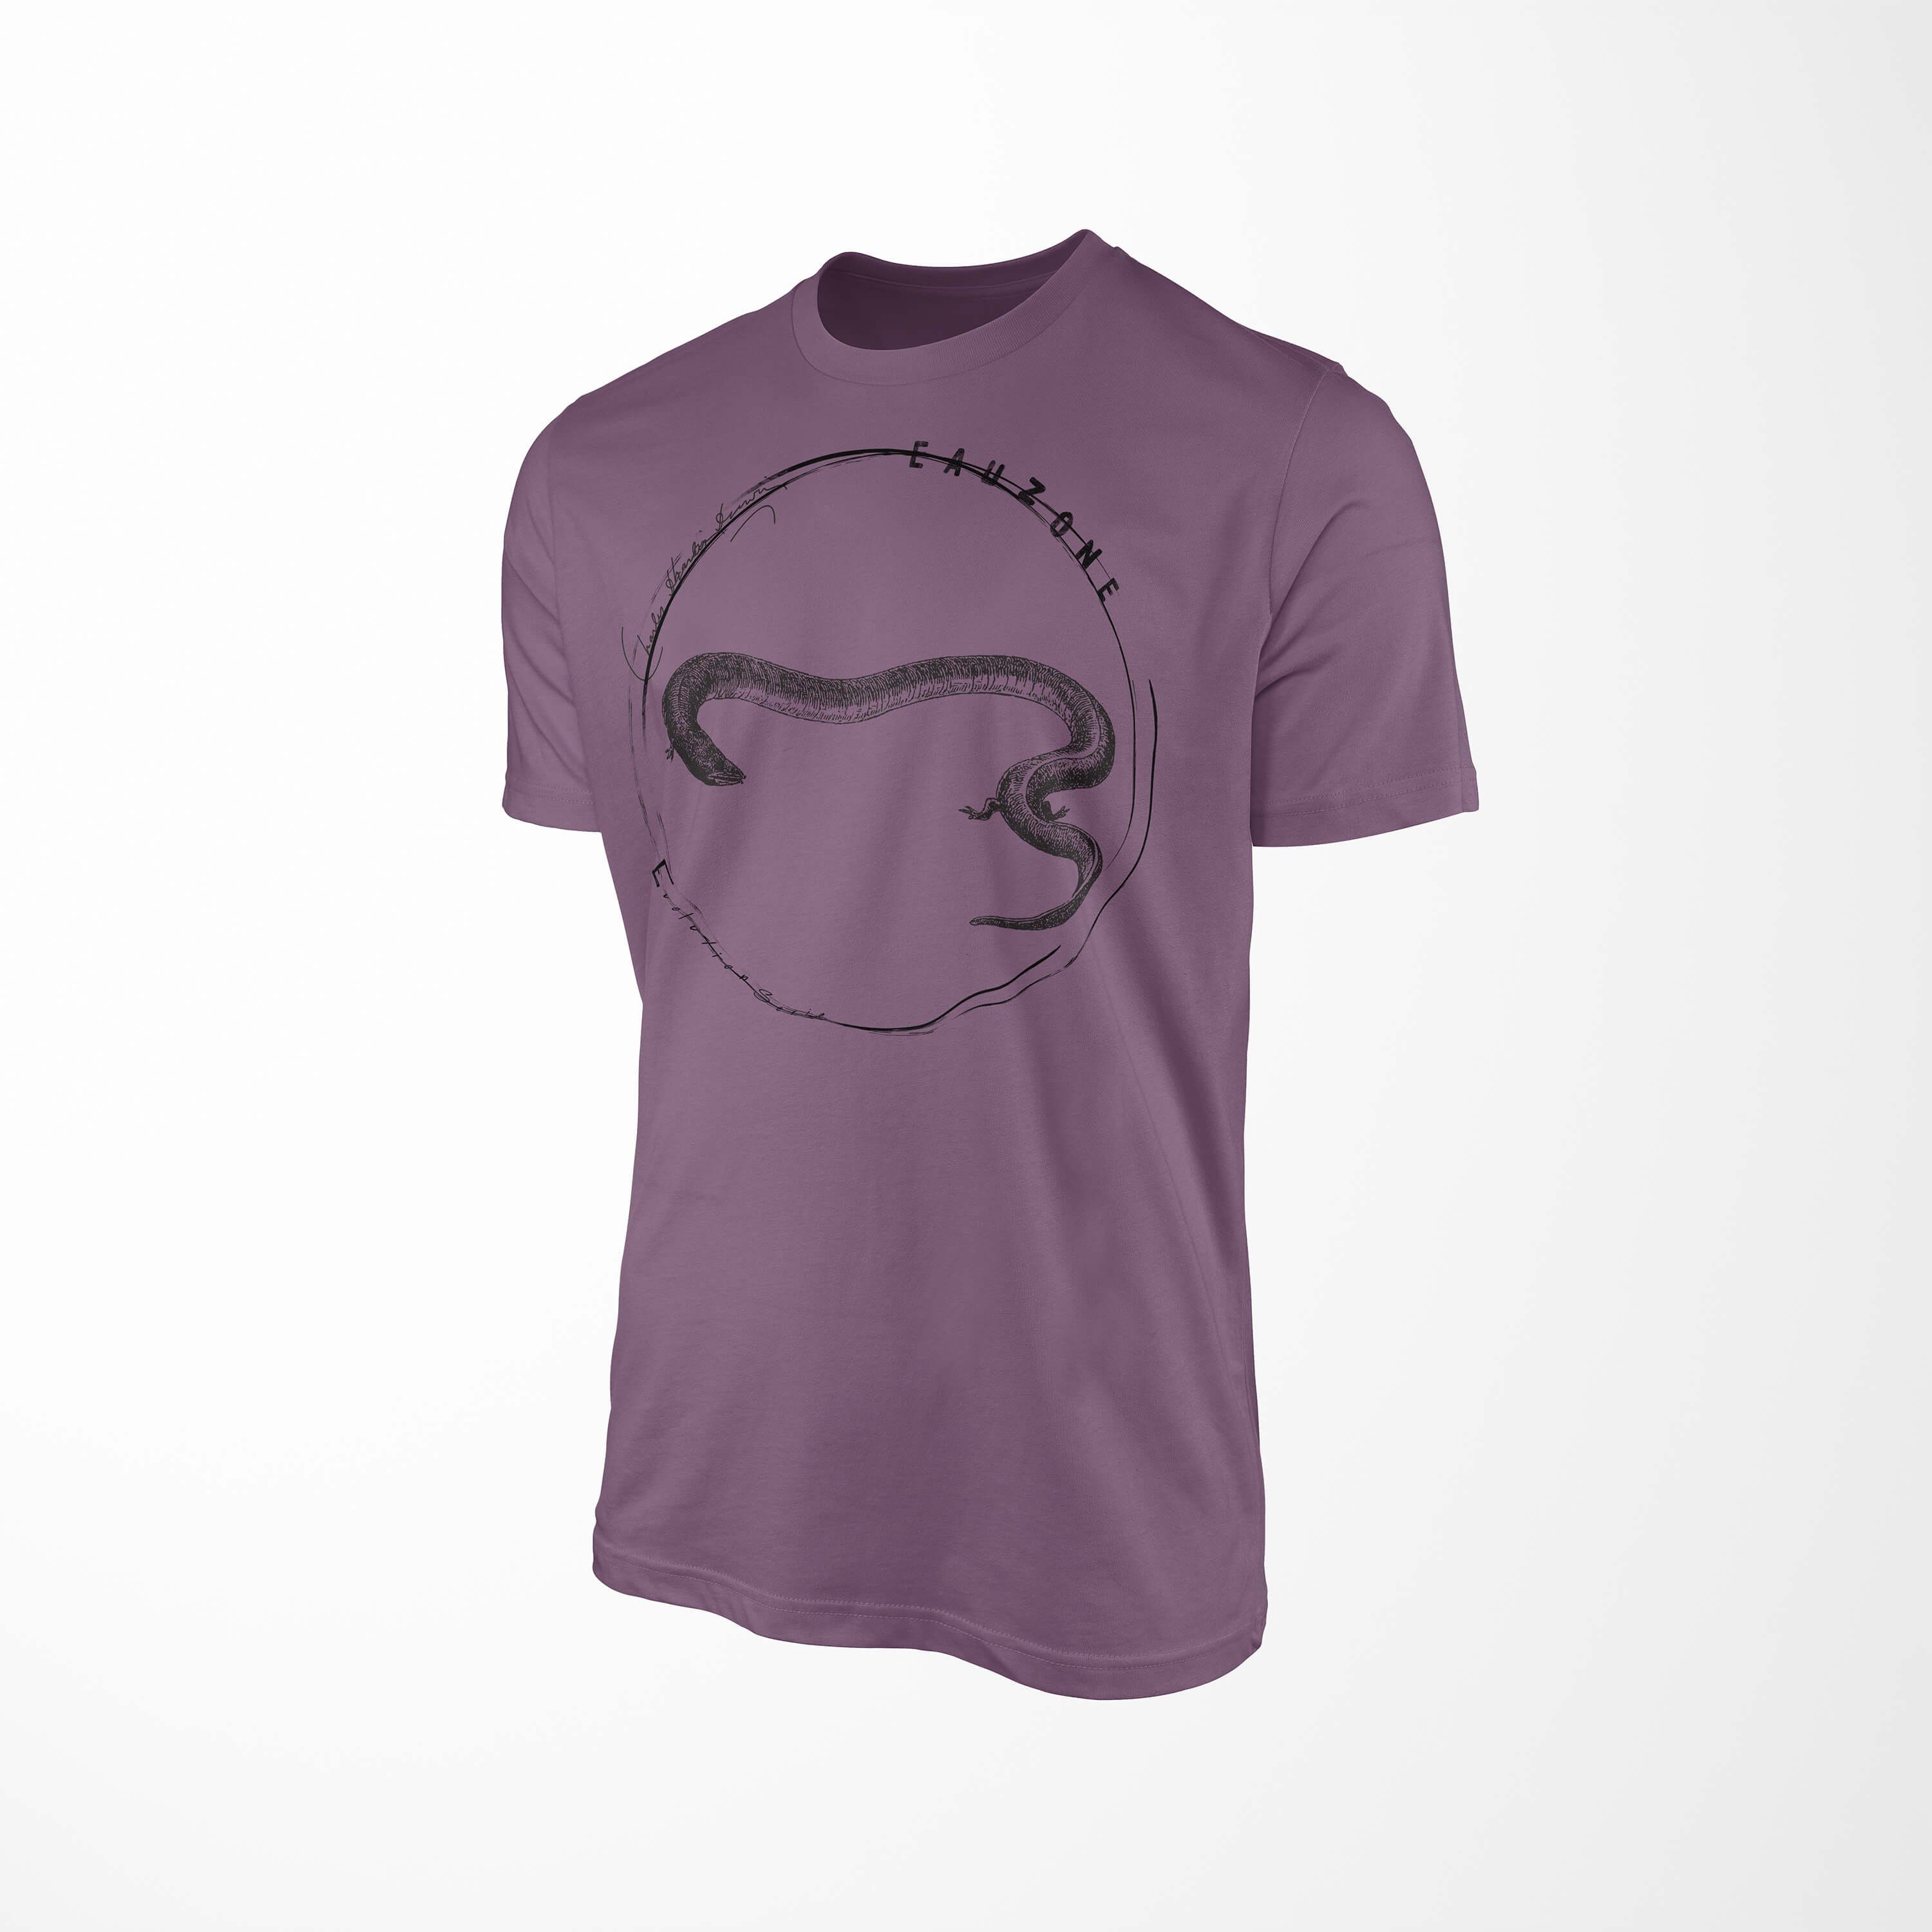 T-Shirt Amphia Evolution Sinus Herren T-Shirt Art Shiraz